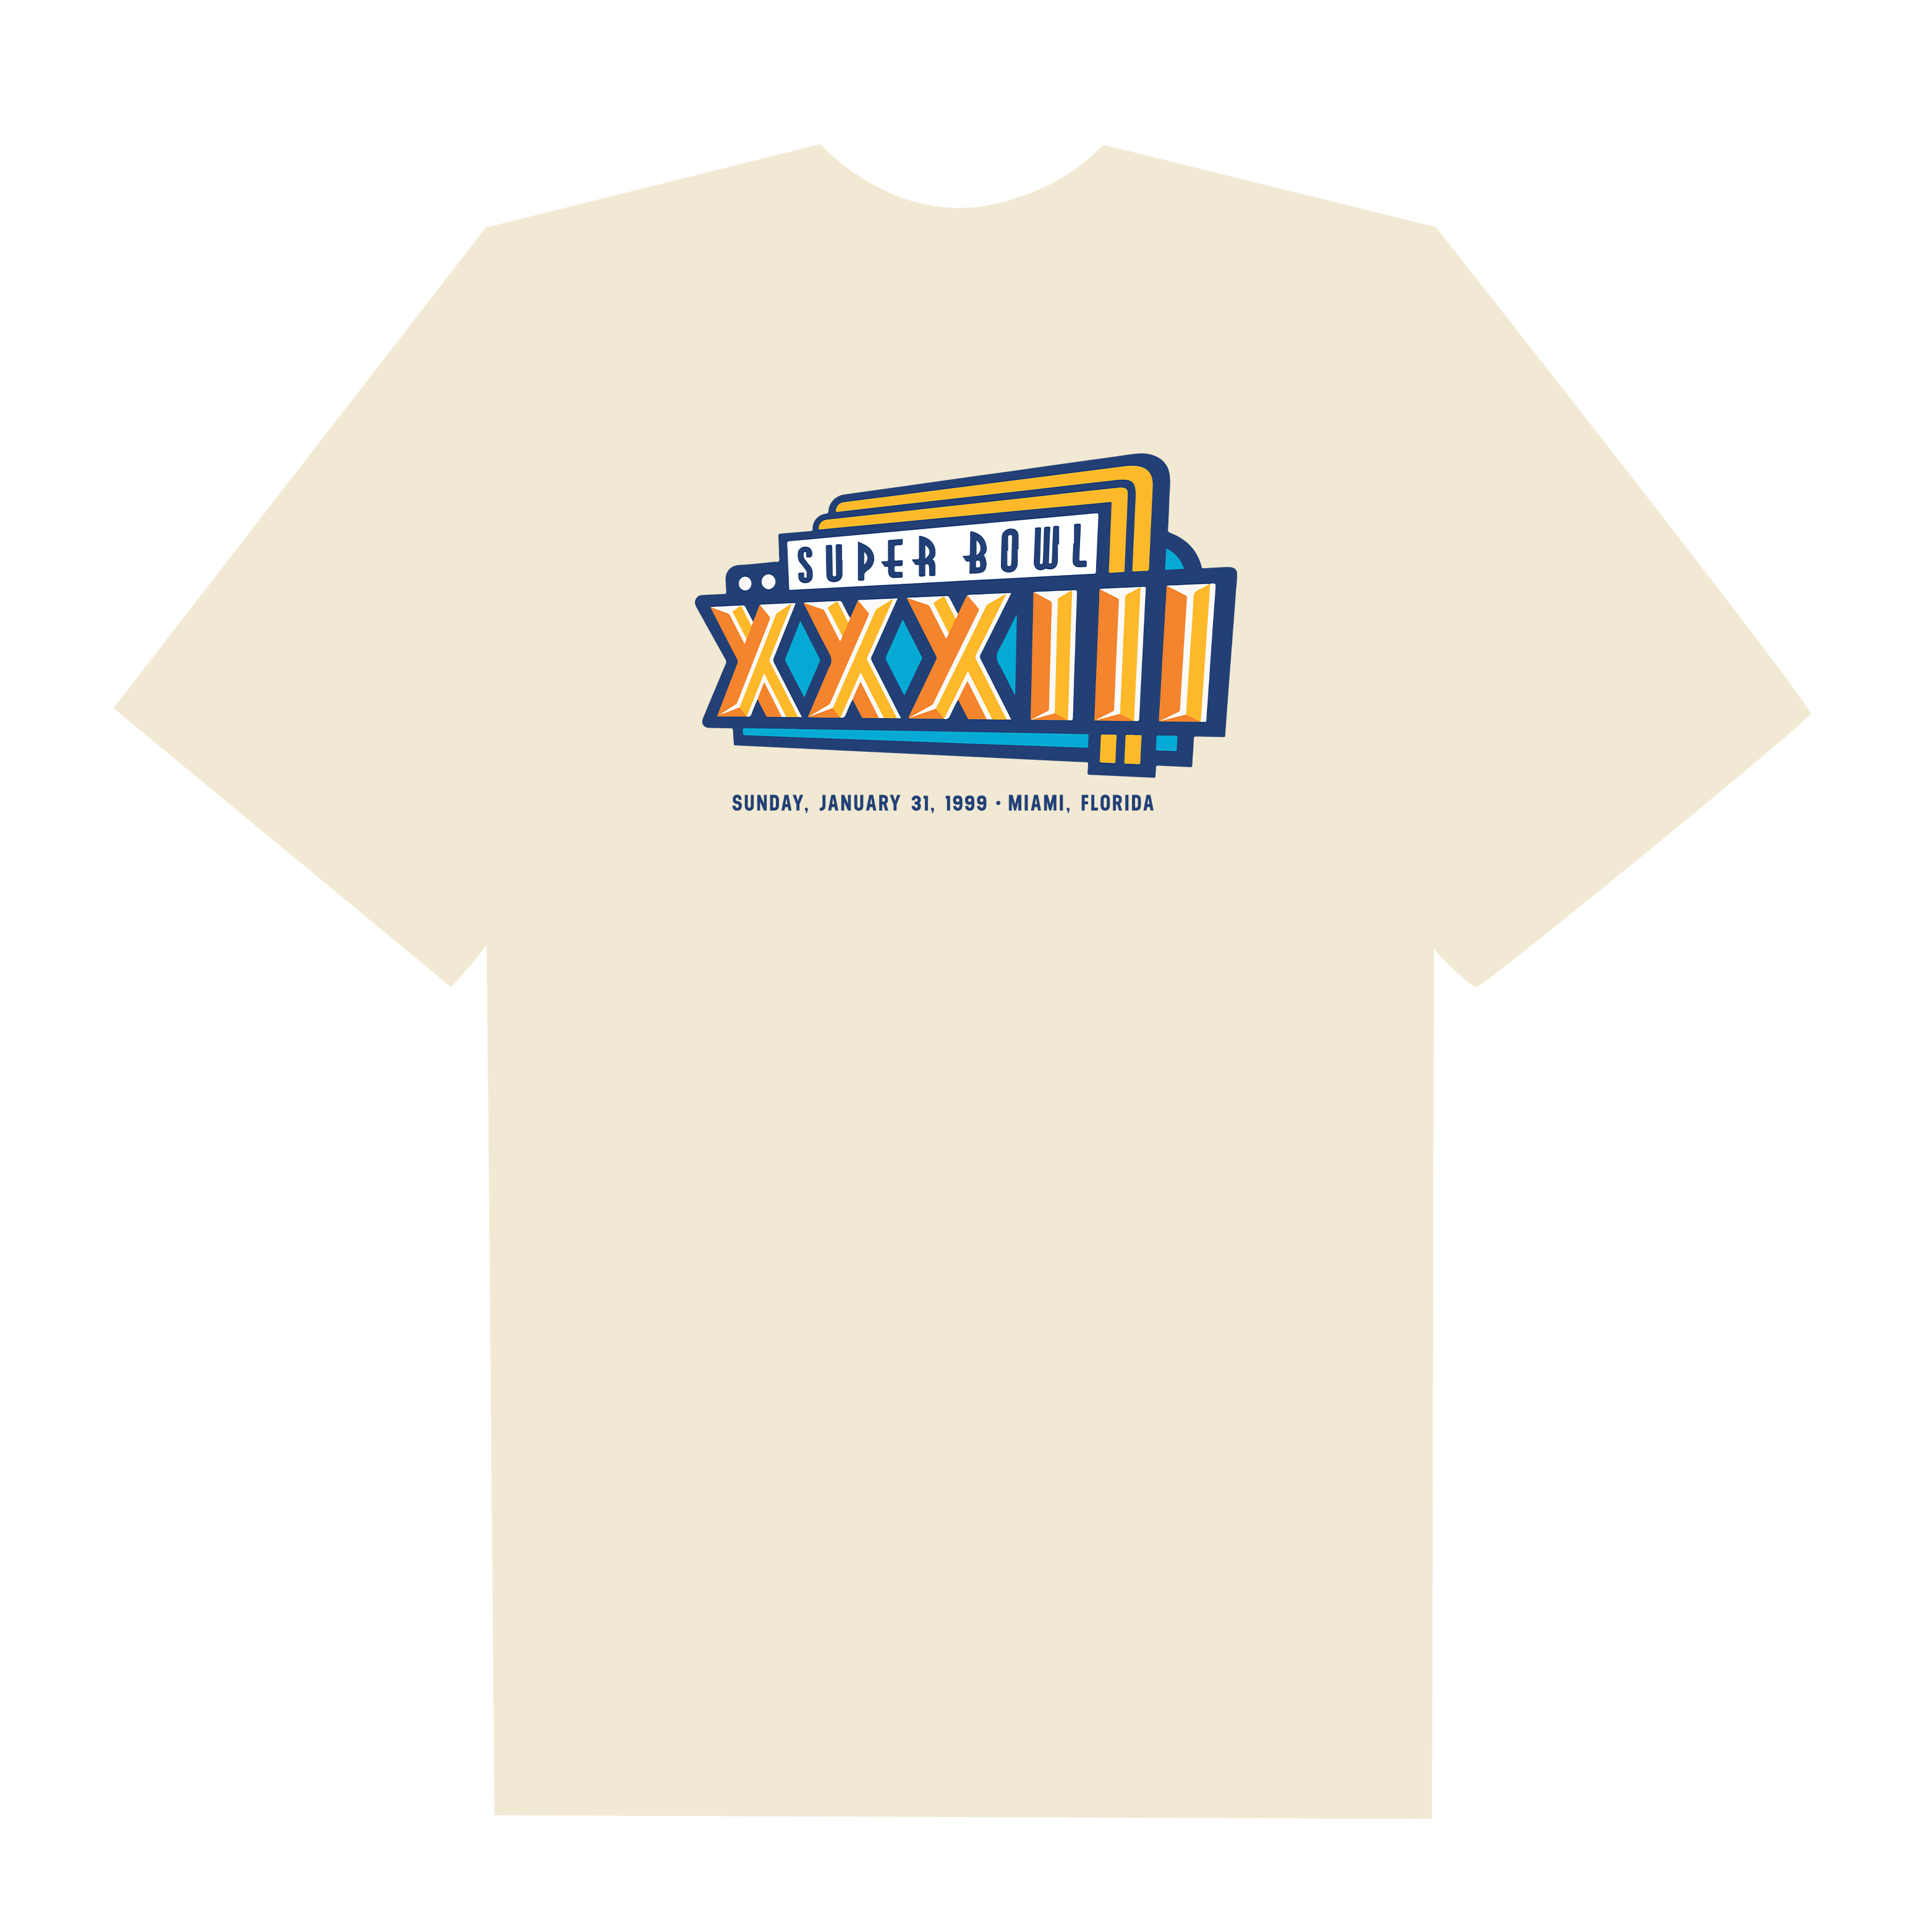 NFL Super Bowl XXXIII T-Shirt